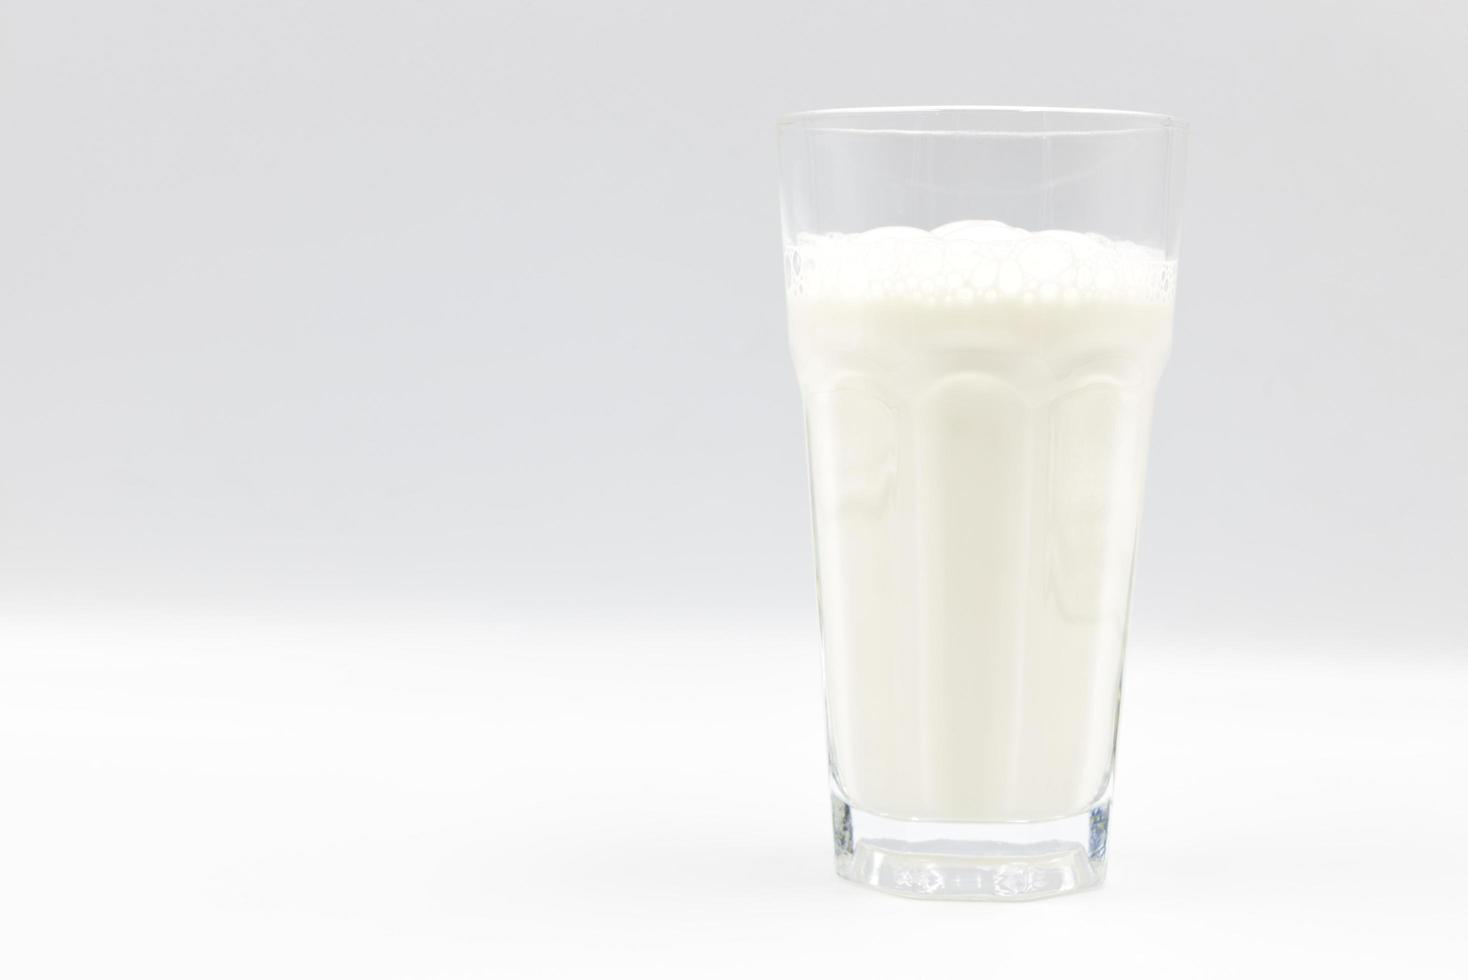 lait en gros plan de verre sur fond blanc. photo